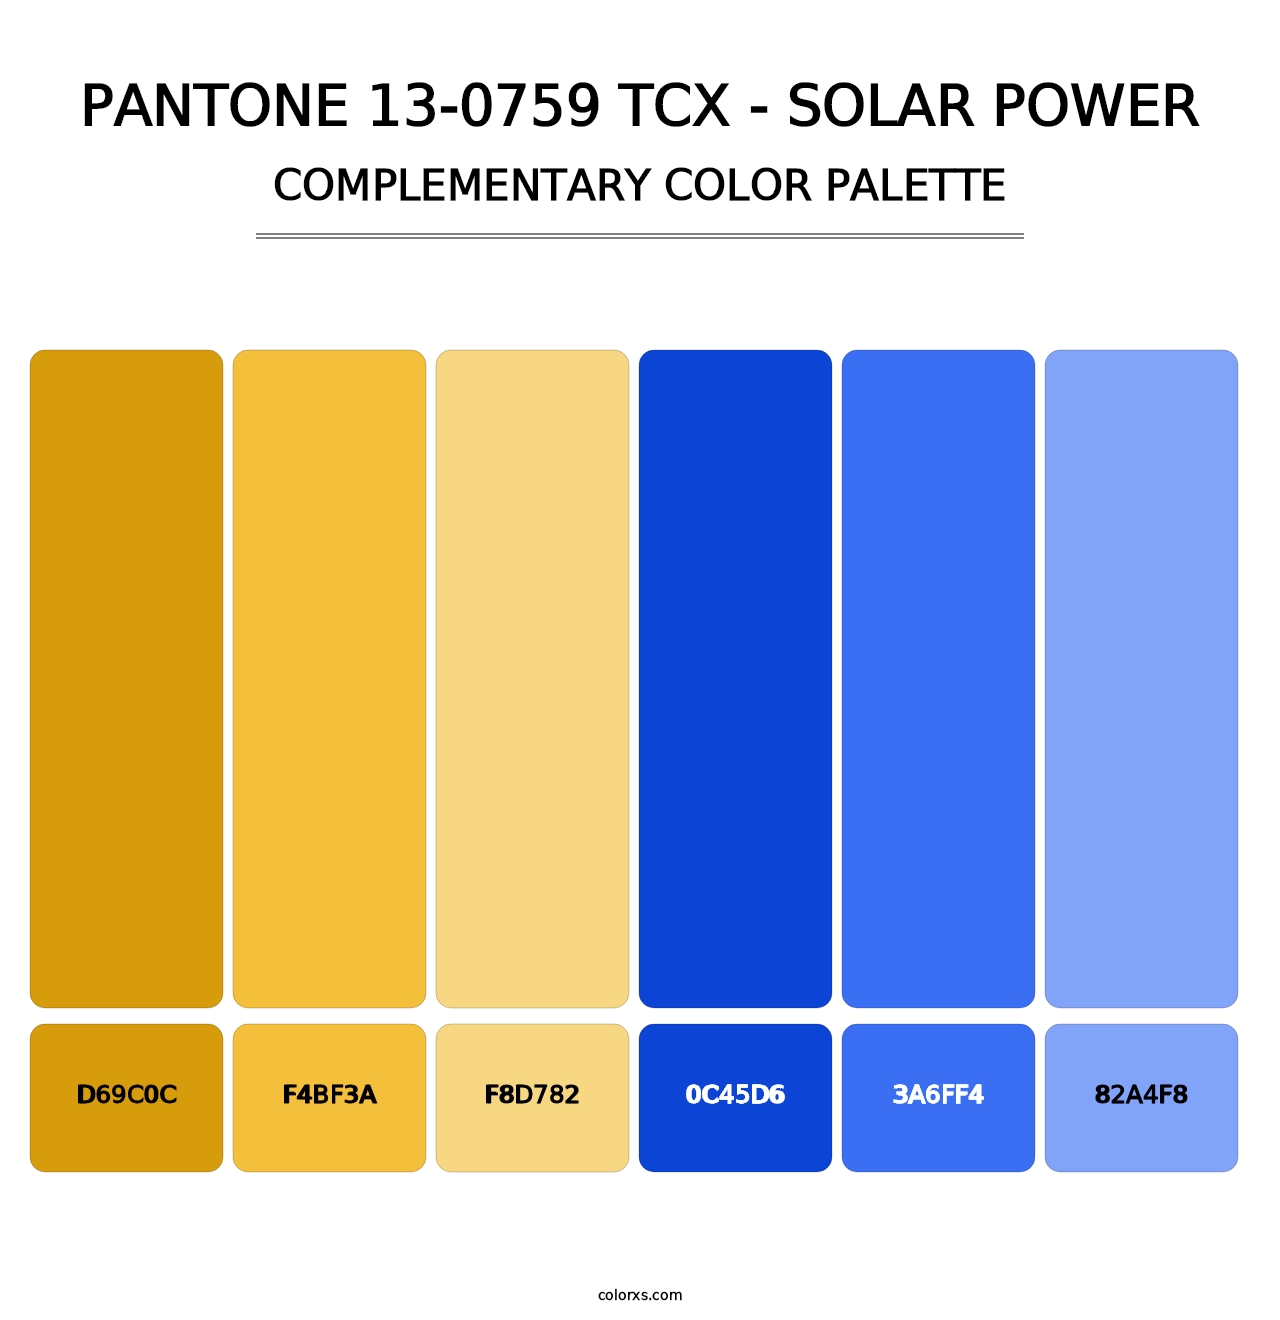 PANTONE 13-0759 TCX - Solar Power - Complementary Color Palette